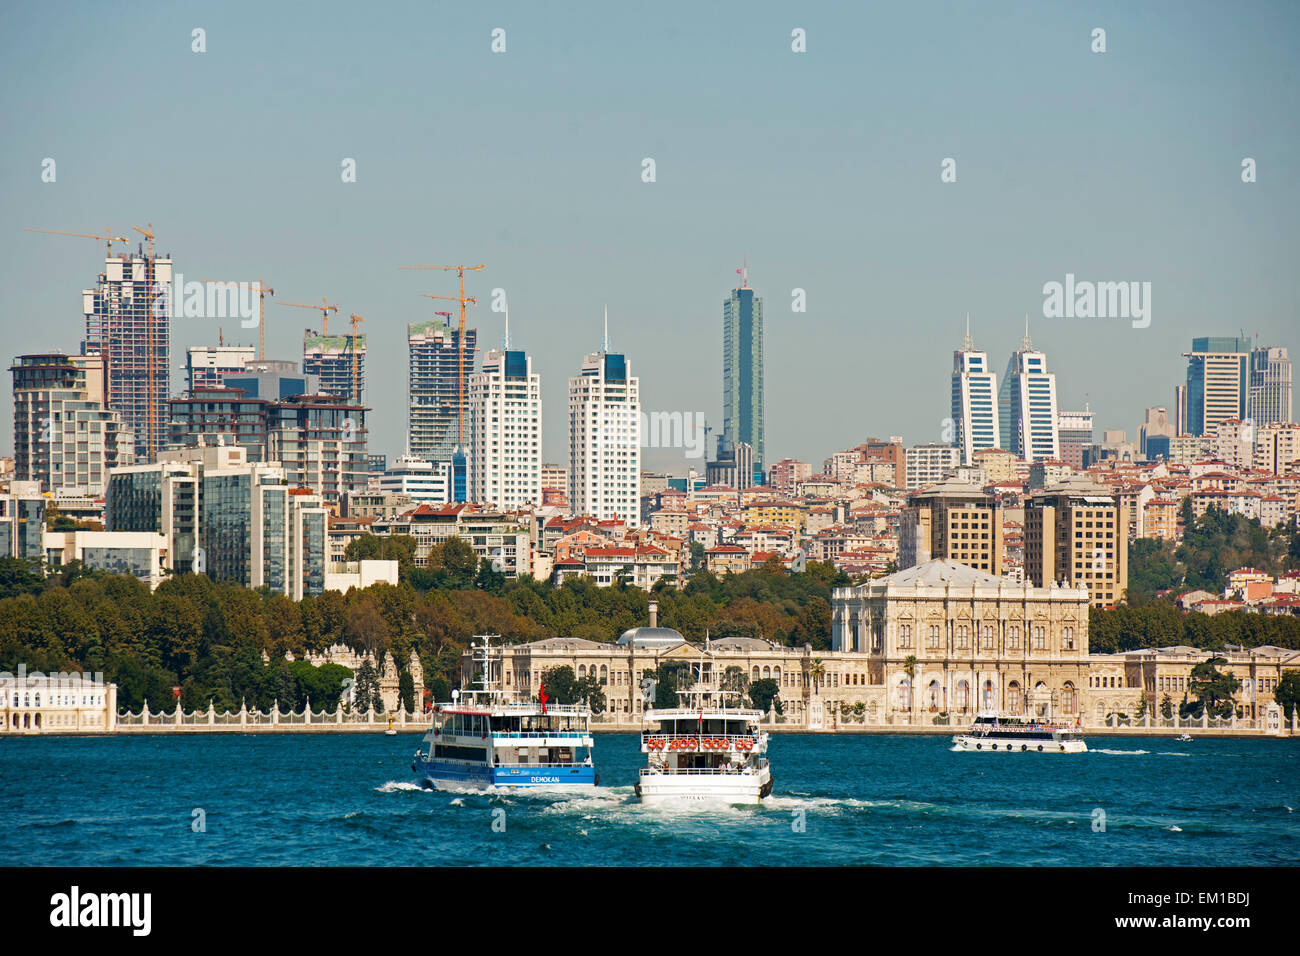 Ägypten, Istanbul, Besiktas, der Dolmabahçe-Palast Oder Dolmabahce Sarayi (Palast der Aufgeschütteten Gärten) so bin Europäisch Stockfoto